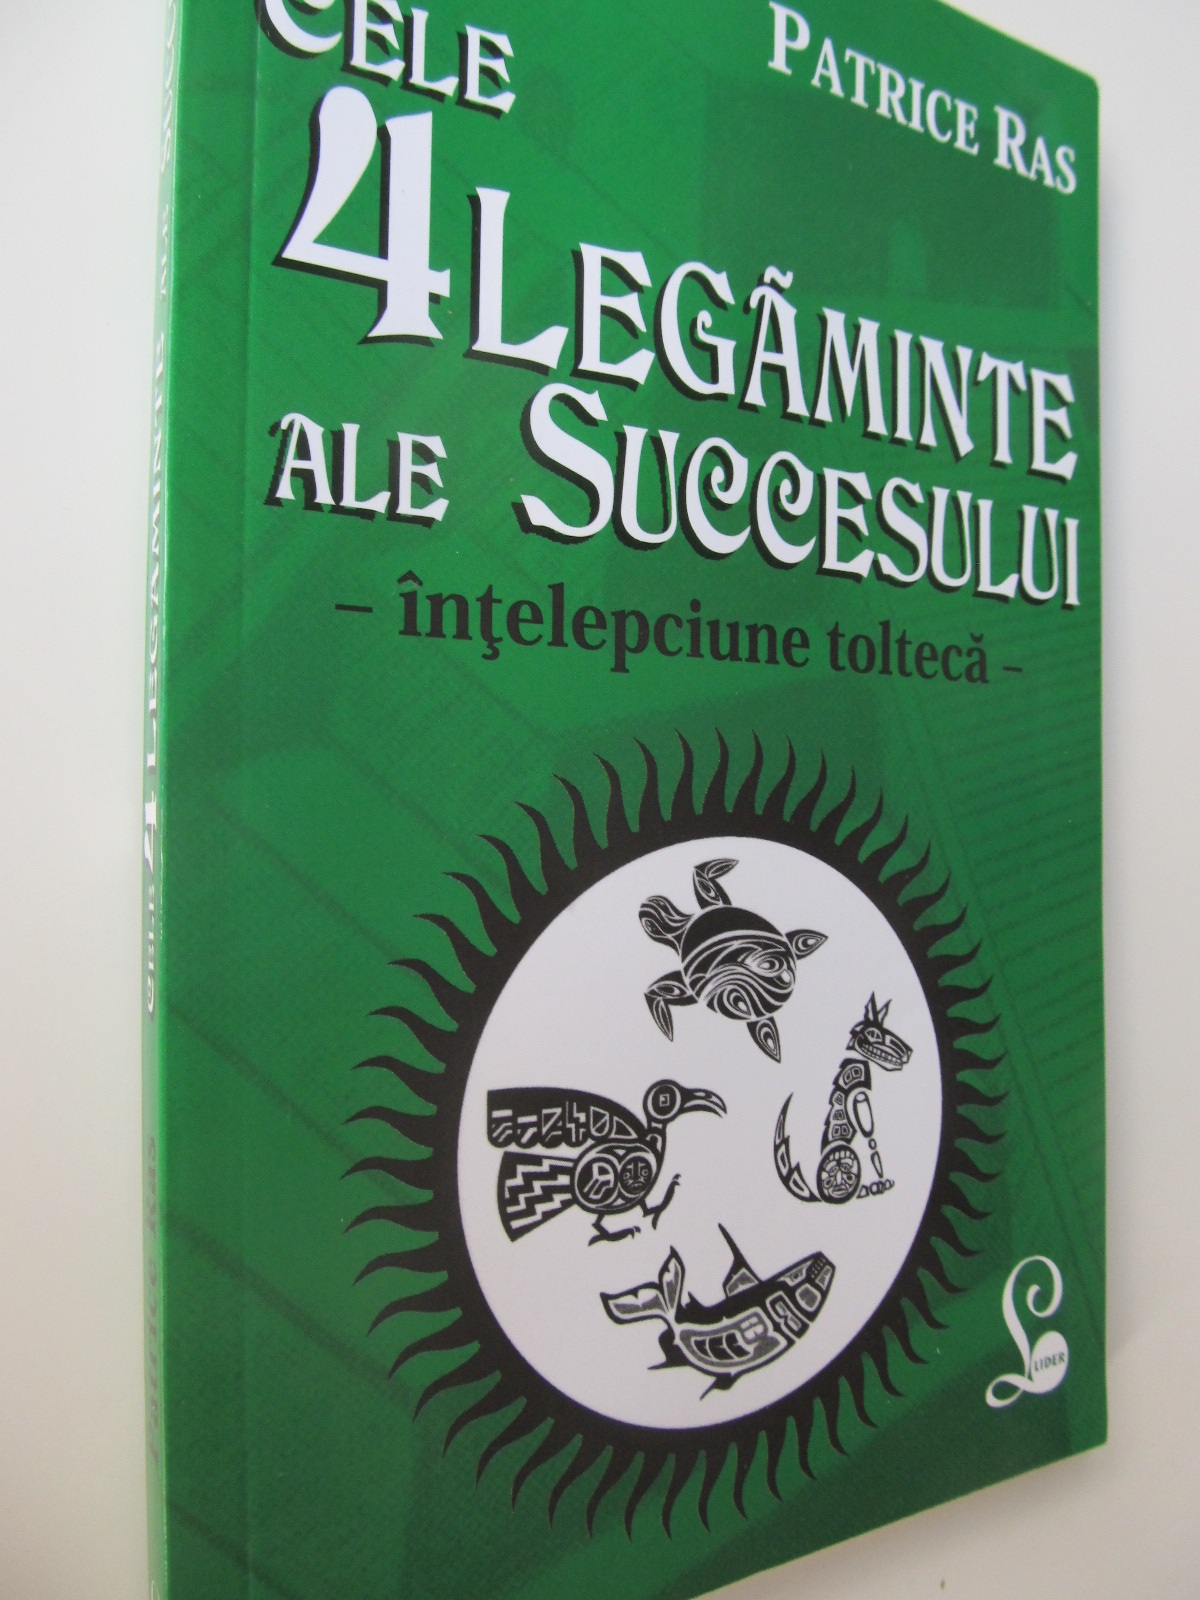 Cele 4 legaminte ale succesului - Intelepciune tolteca - Patrice Ras | Detalii carte